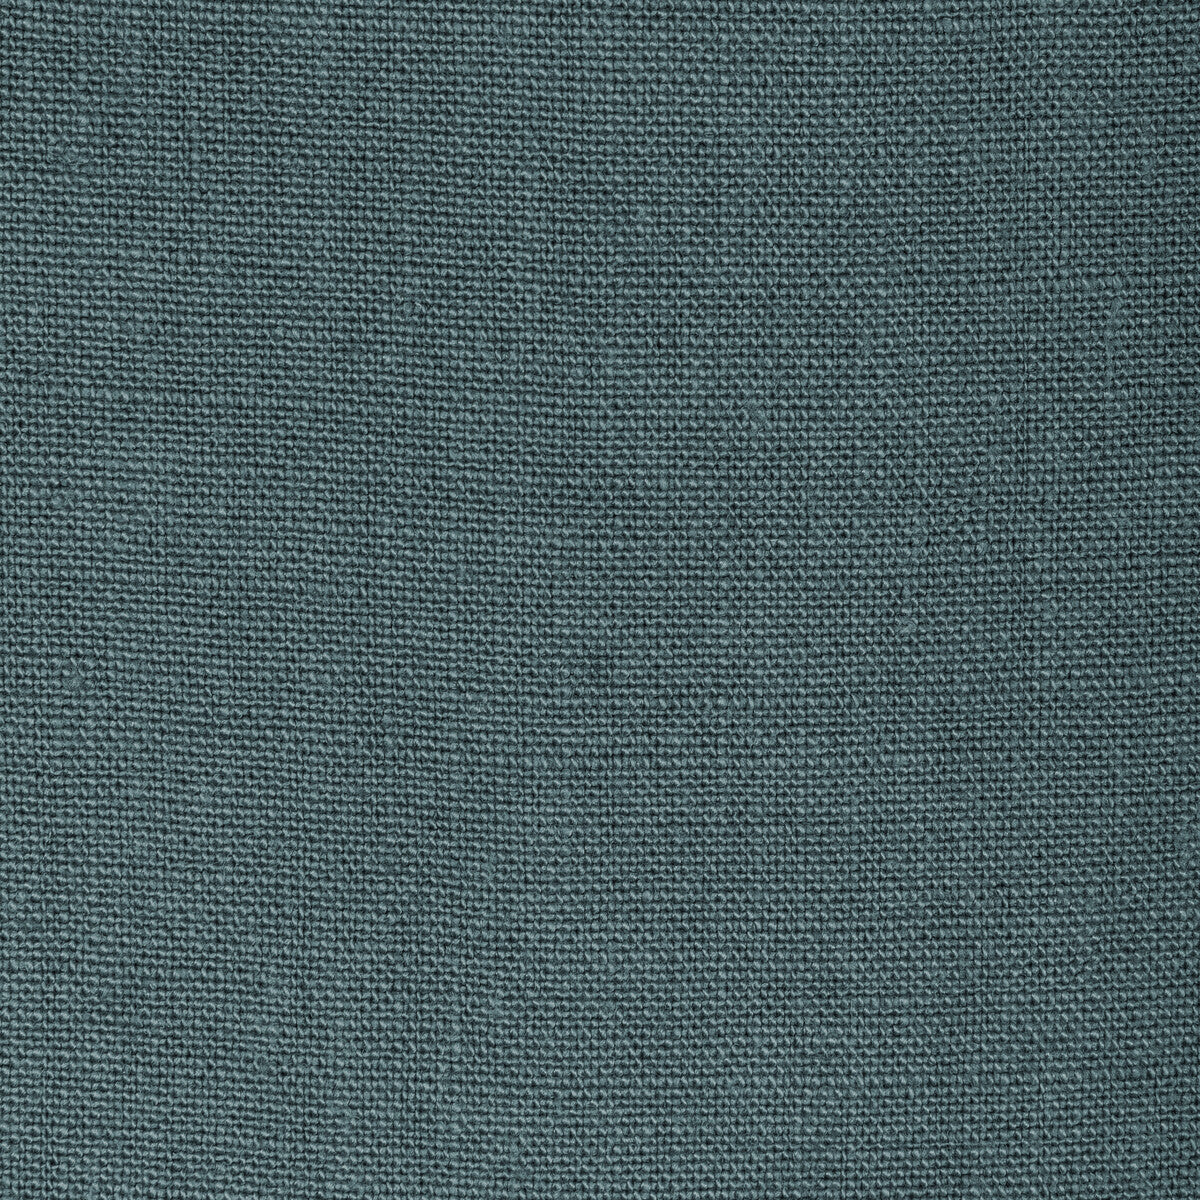 Kravet Basics fabric in 36332-315 color - pattern 36332.315.0 - by Kravet Basics